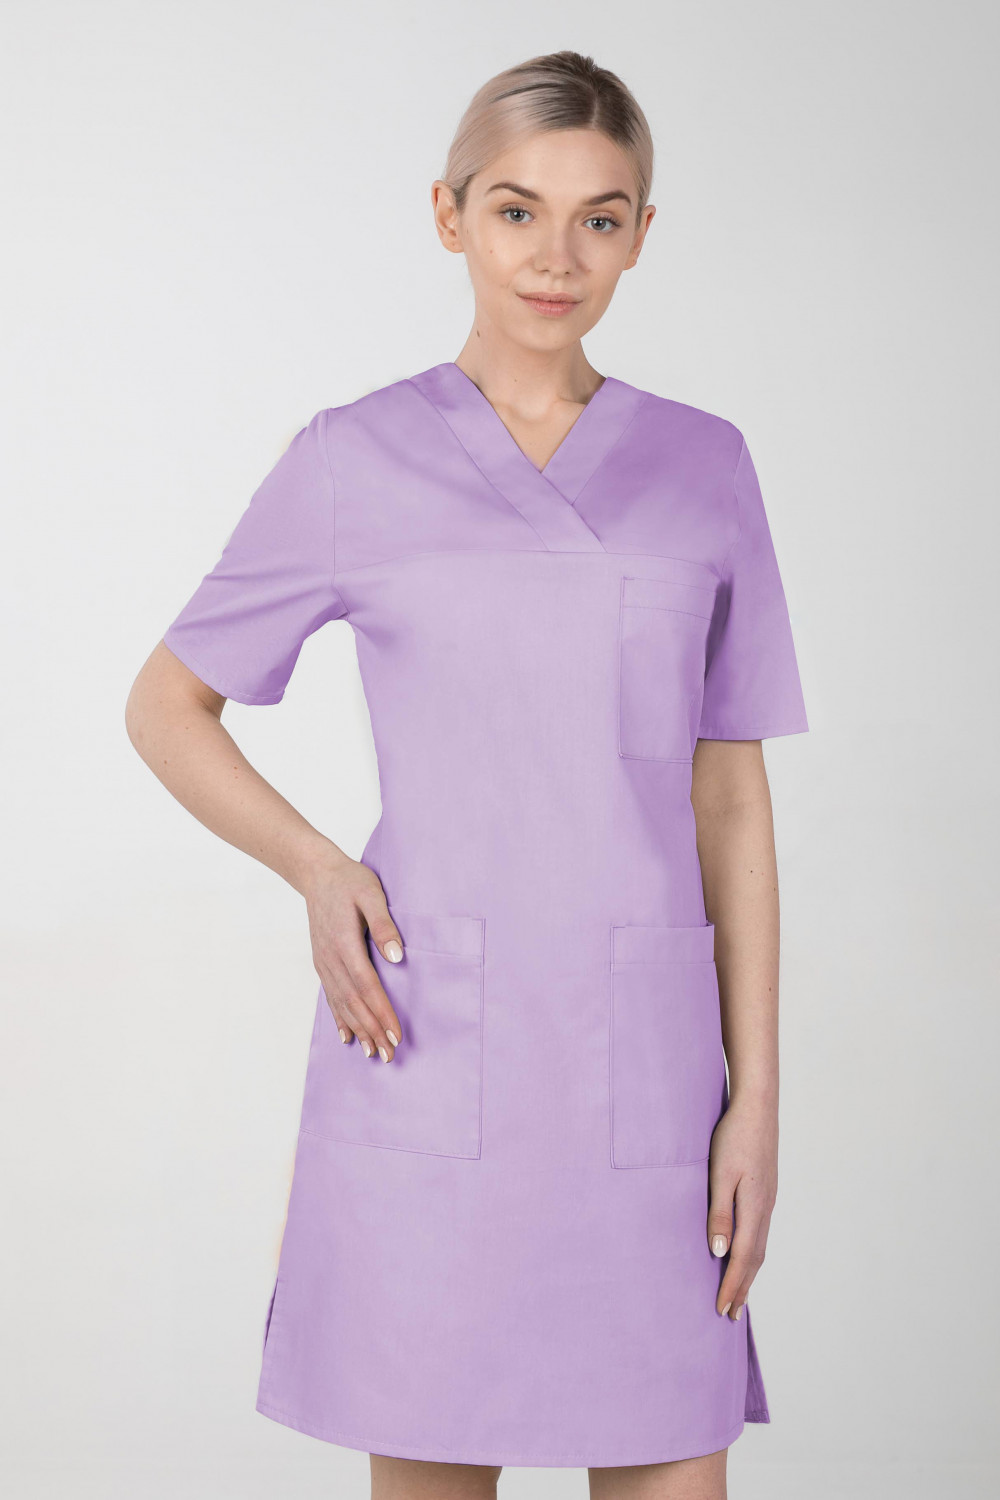 M-076F Sukienka medyczna wiązana  fartuch medyczny kolor lawenda